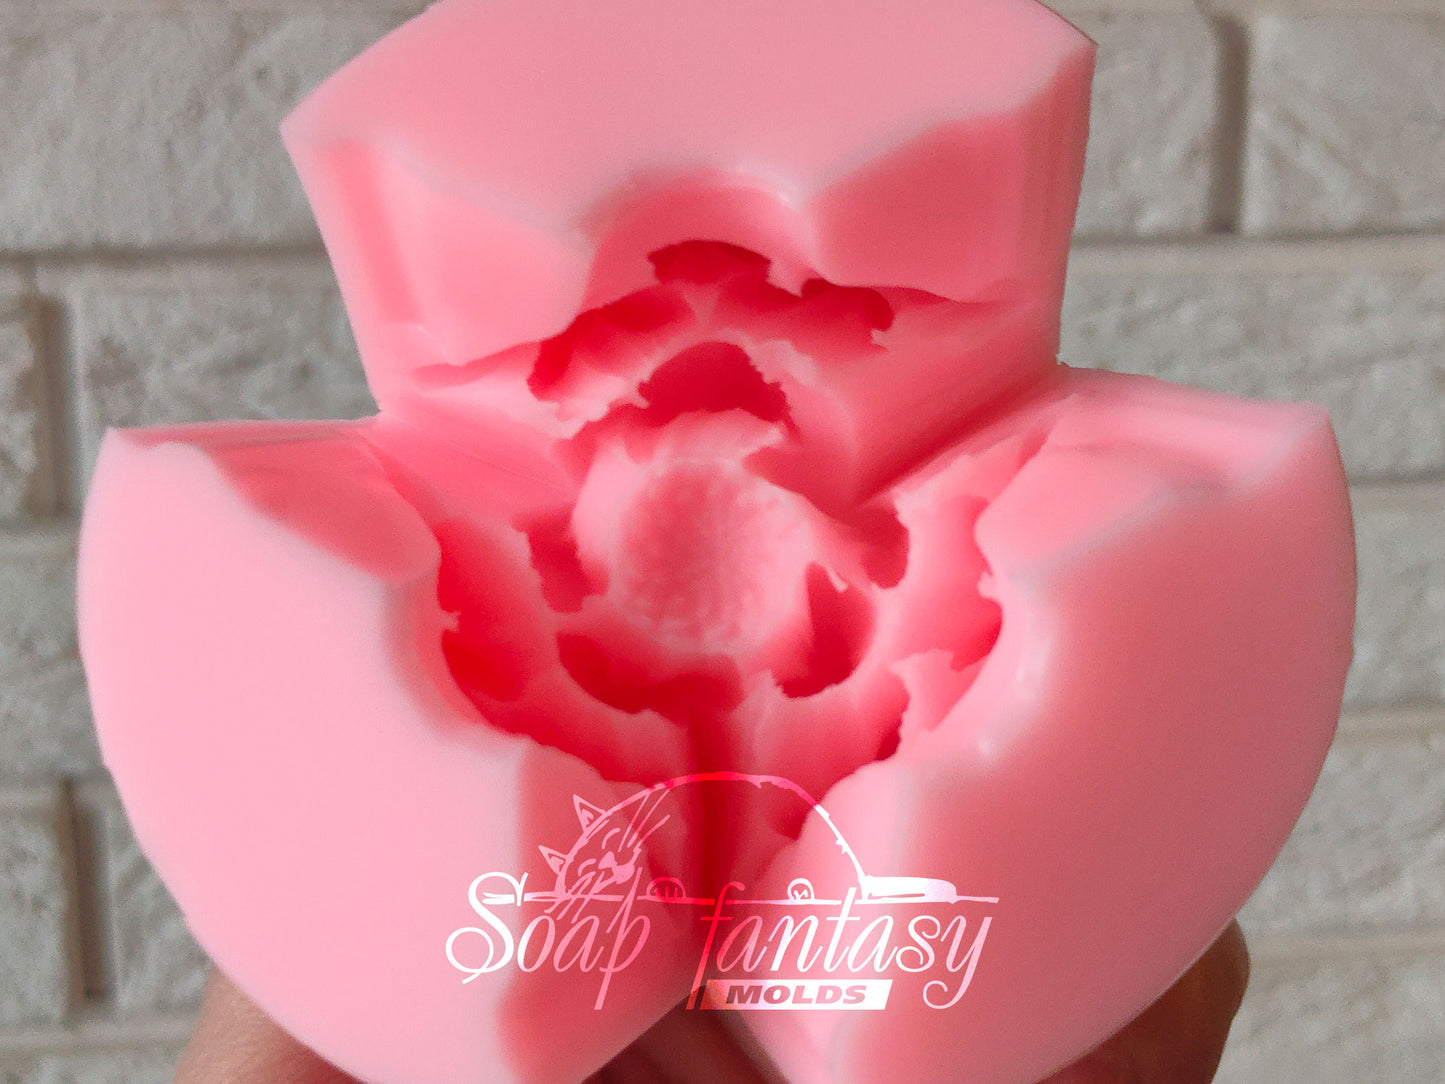 Dahlia "La Cierva" silicone mold for soap making